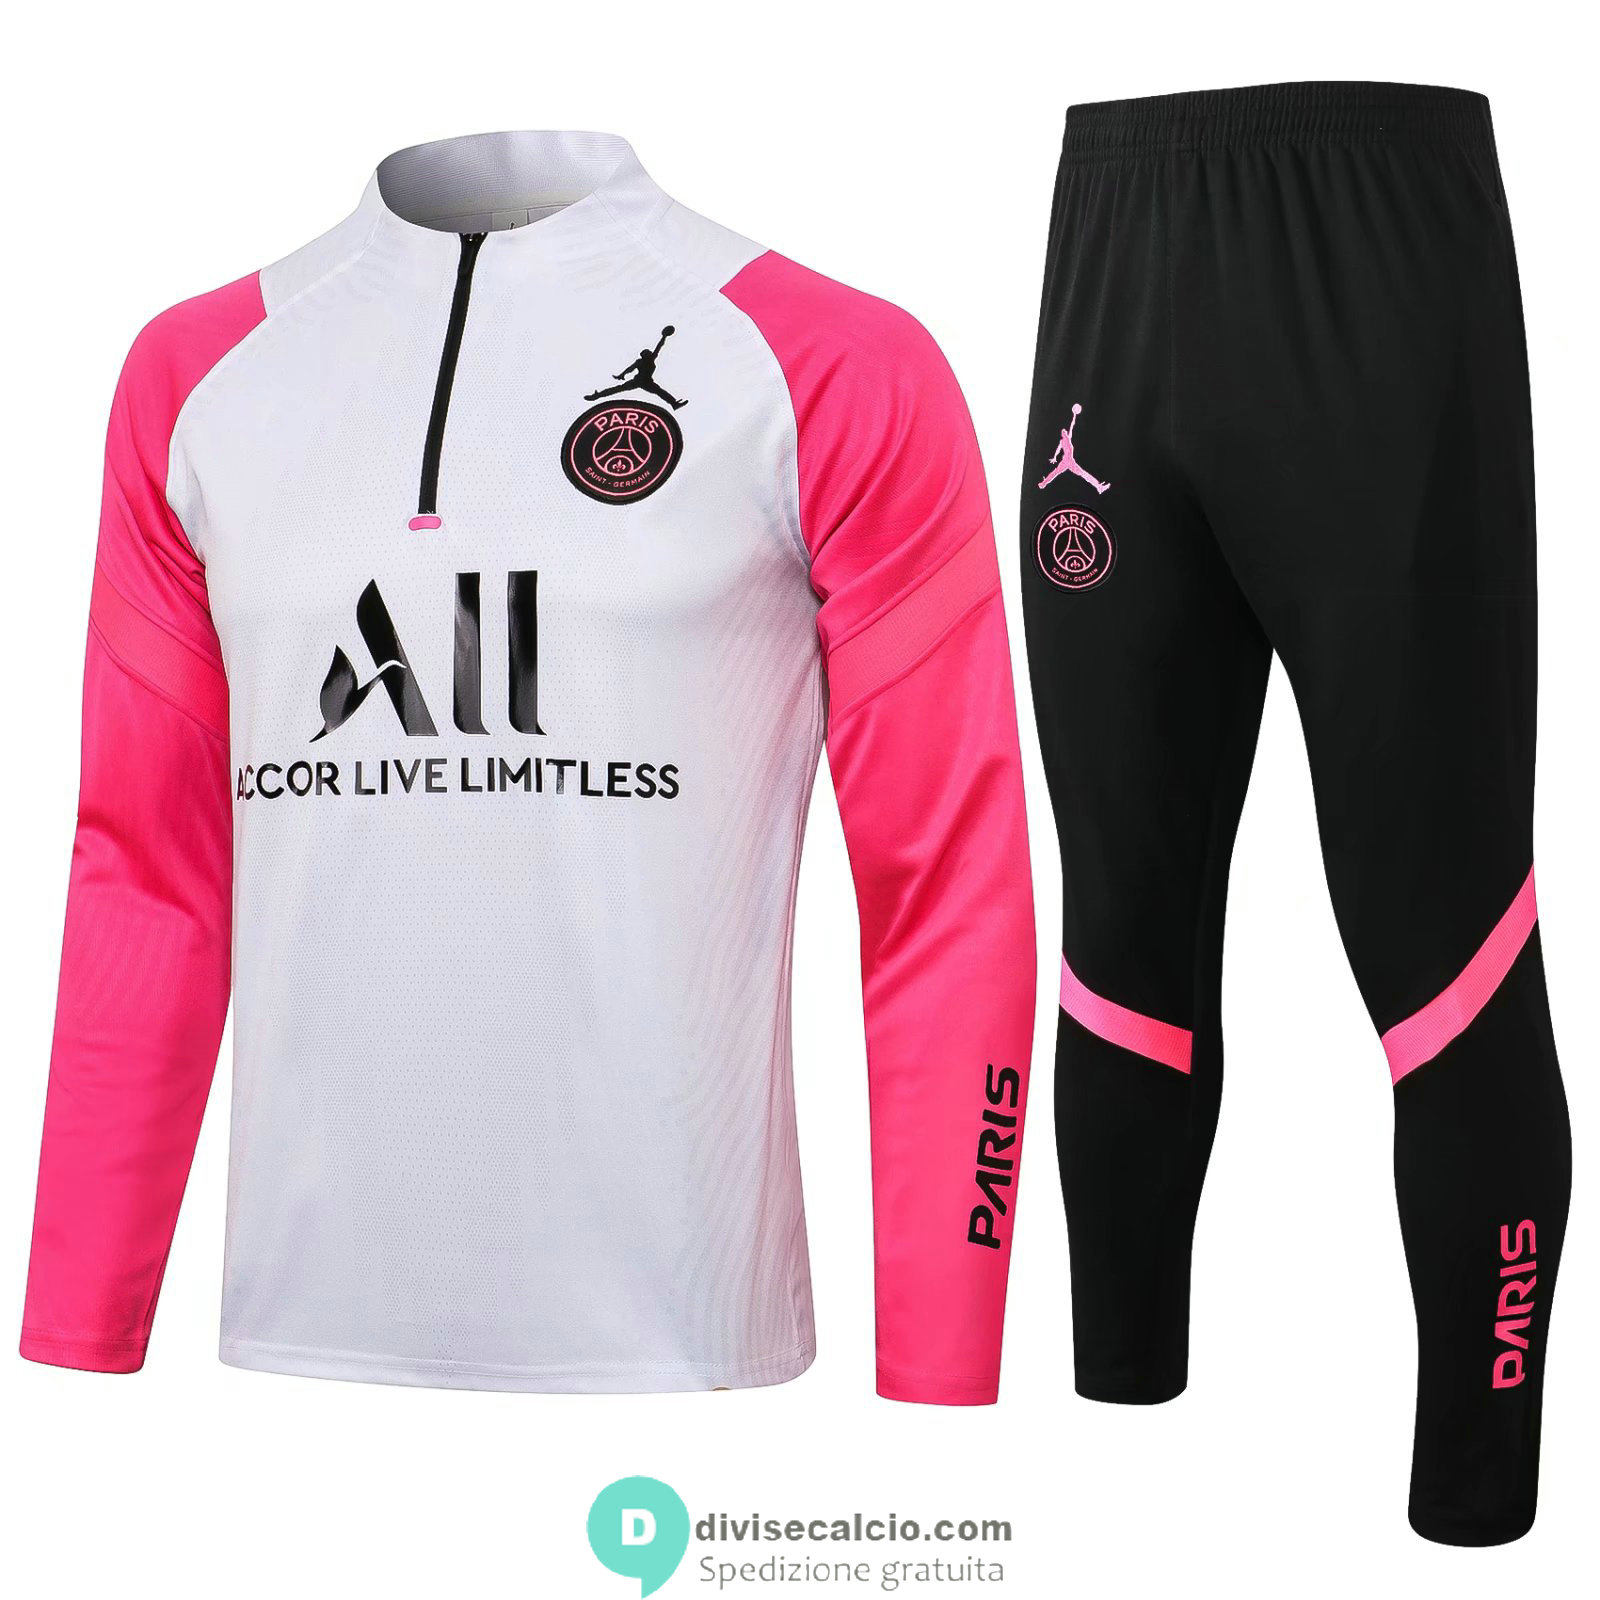 PSG x Jordan Formazione Felpa White Pink + Pantaloni Black 2021/2022